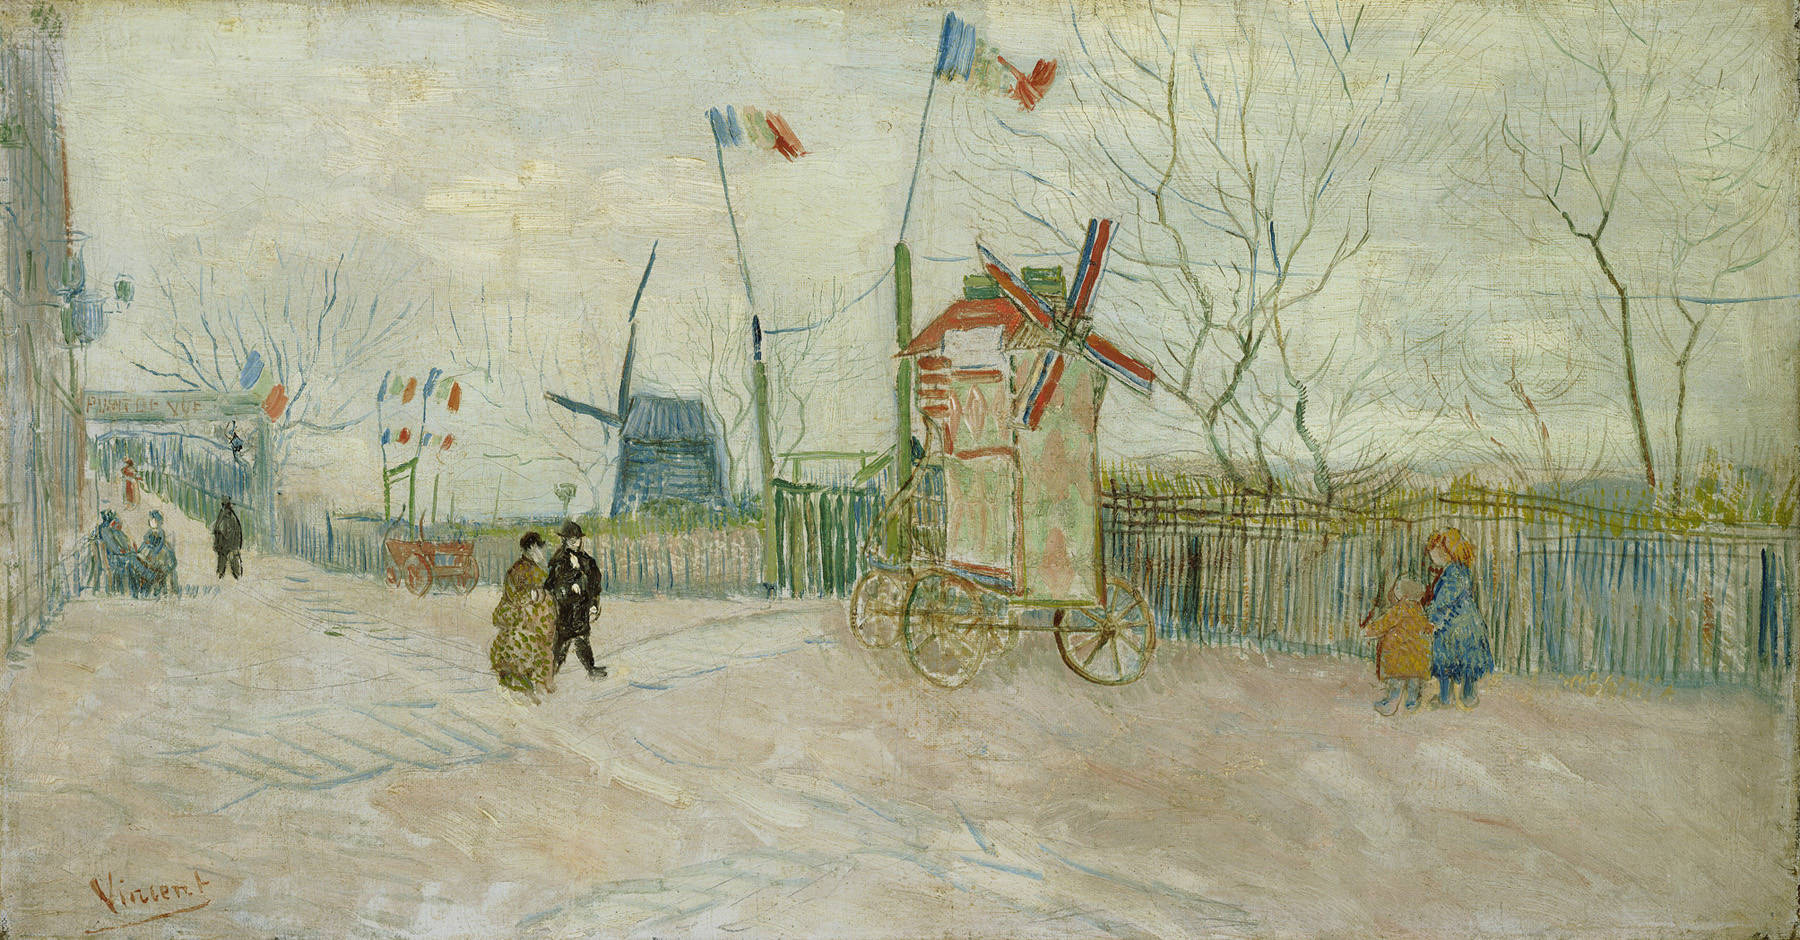 蒙馬特街景-胡椒磨坊 by Vincent van Gogh - 1887 - 34.5 x 64.5 釐米 